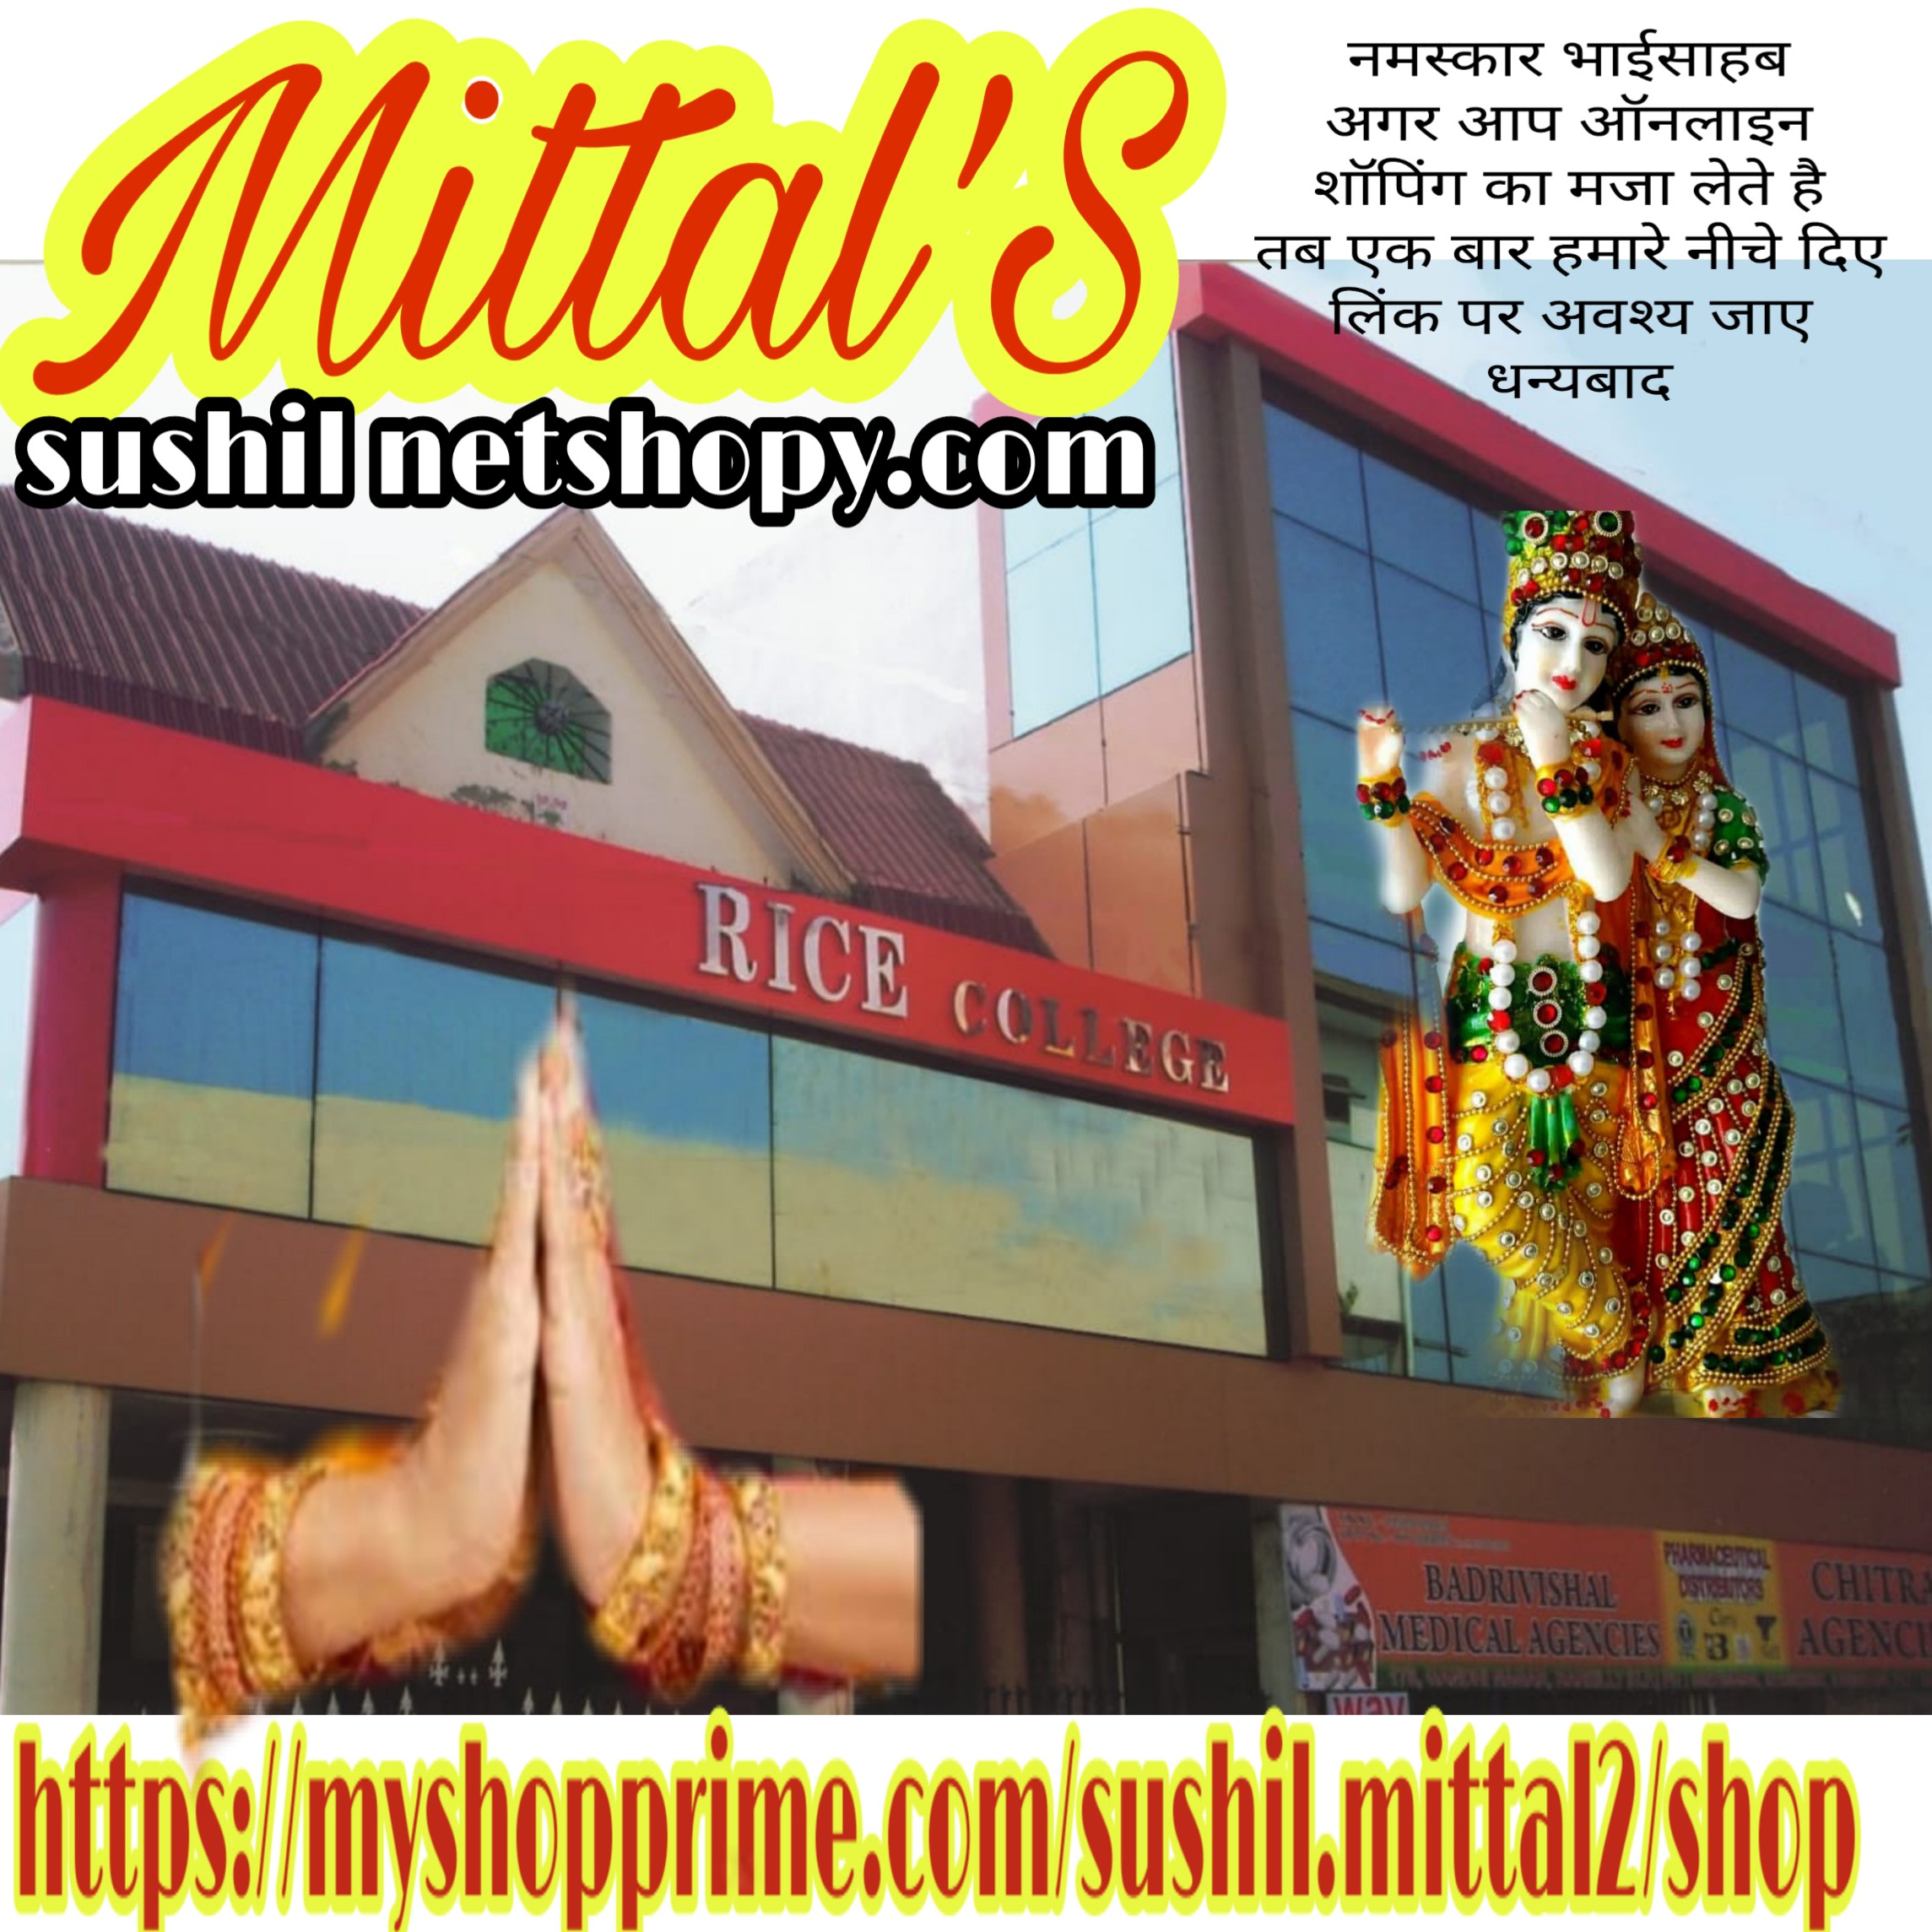 Mittal's Sushil Netshopy